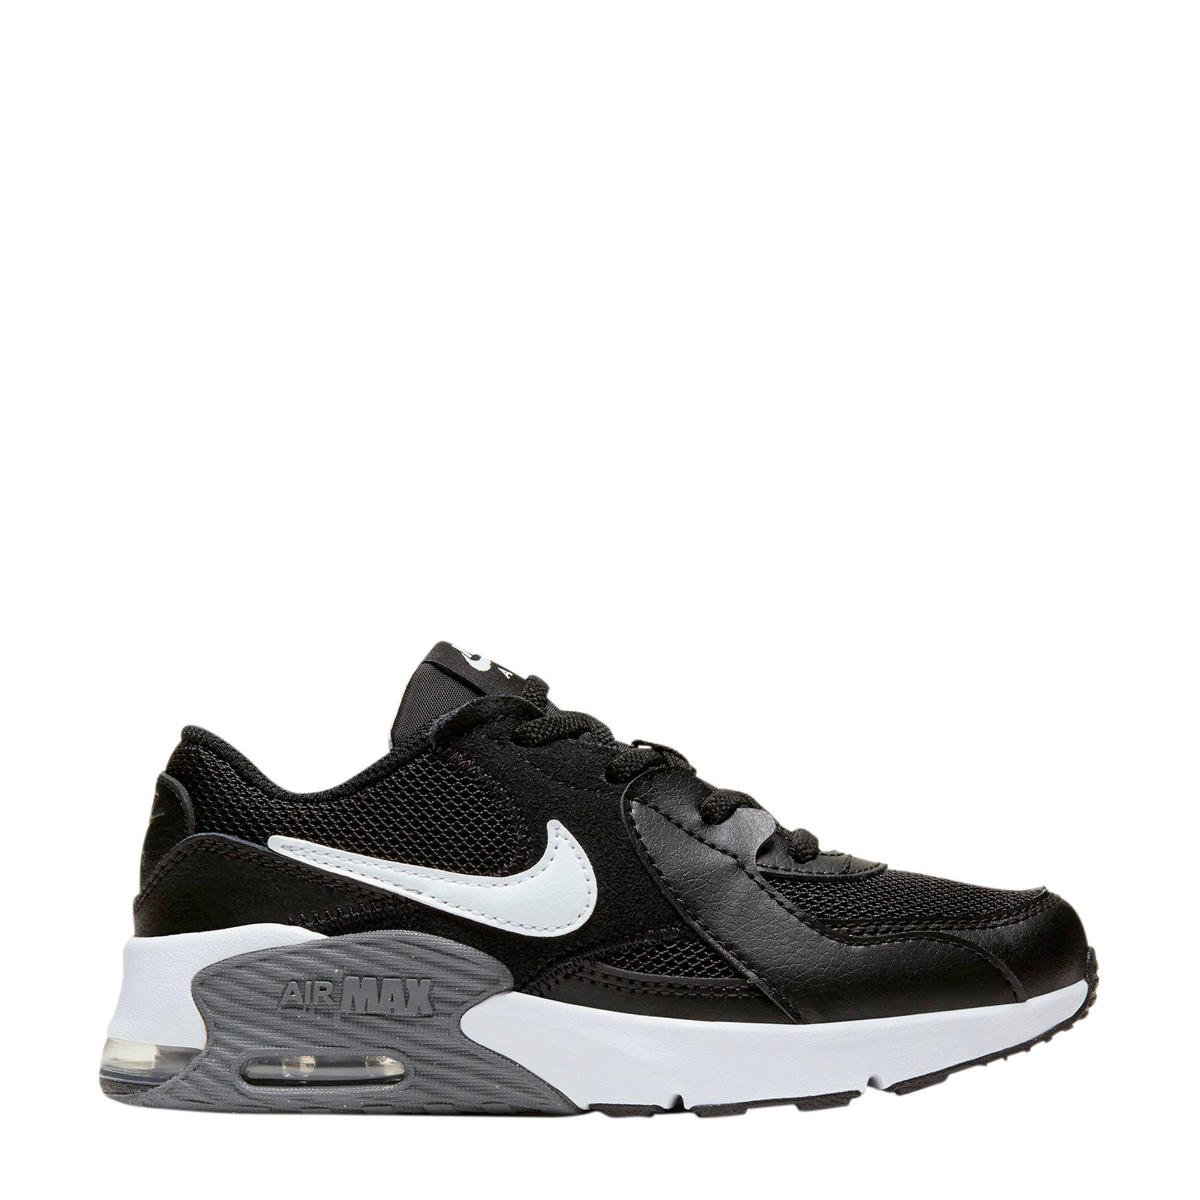 composiet daar ben ik het mee eens komen Nike Air Max Excee sneakers zwart/wit/donkergrijs | wehkamp